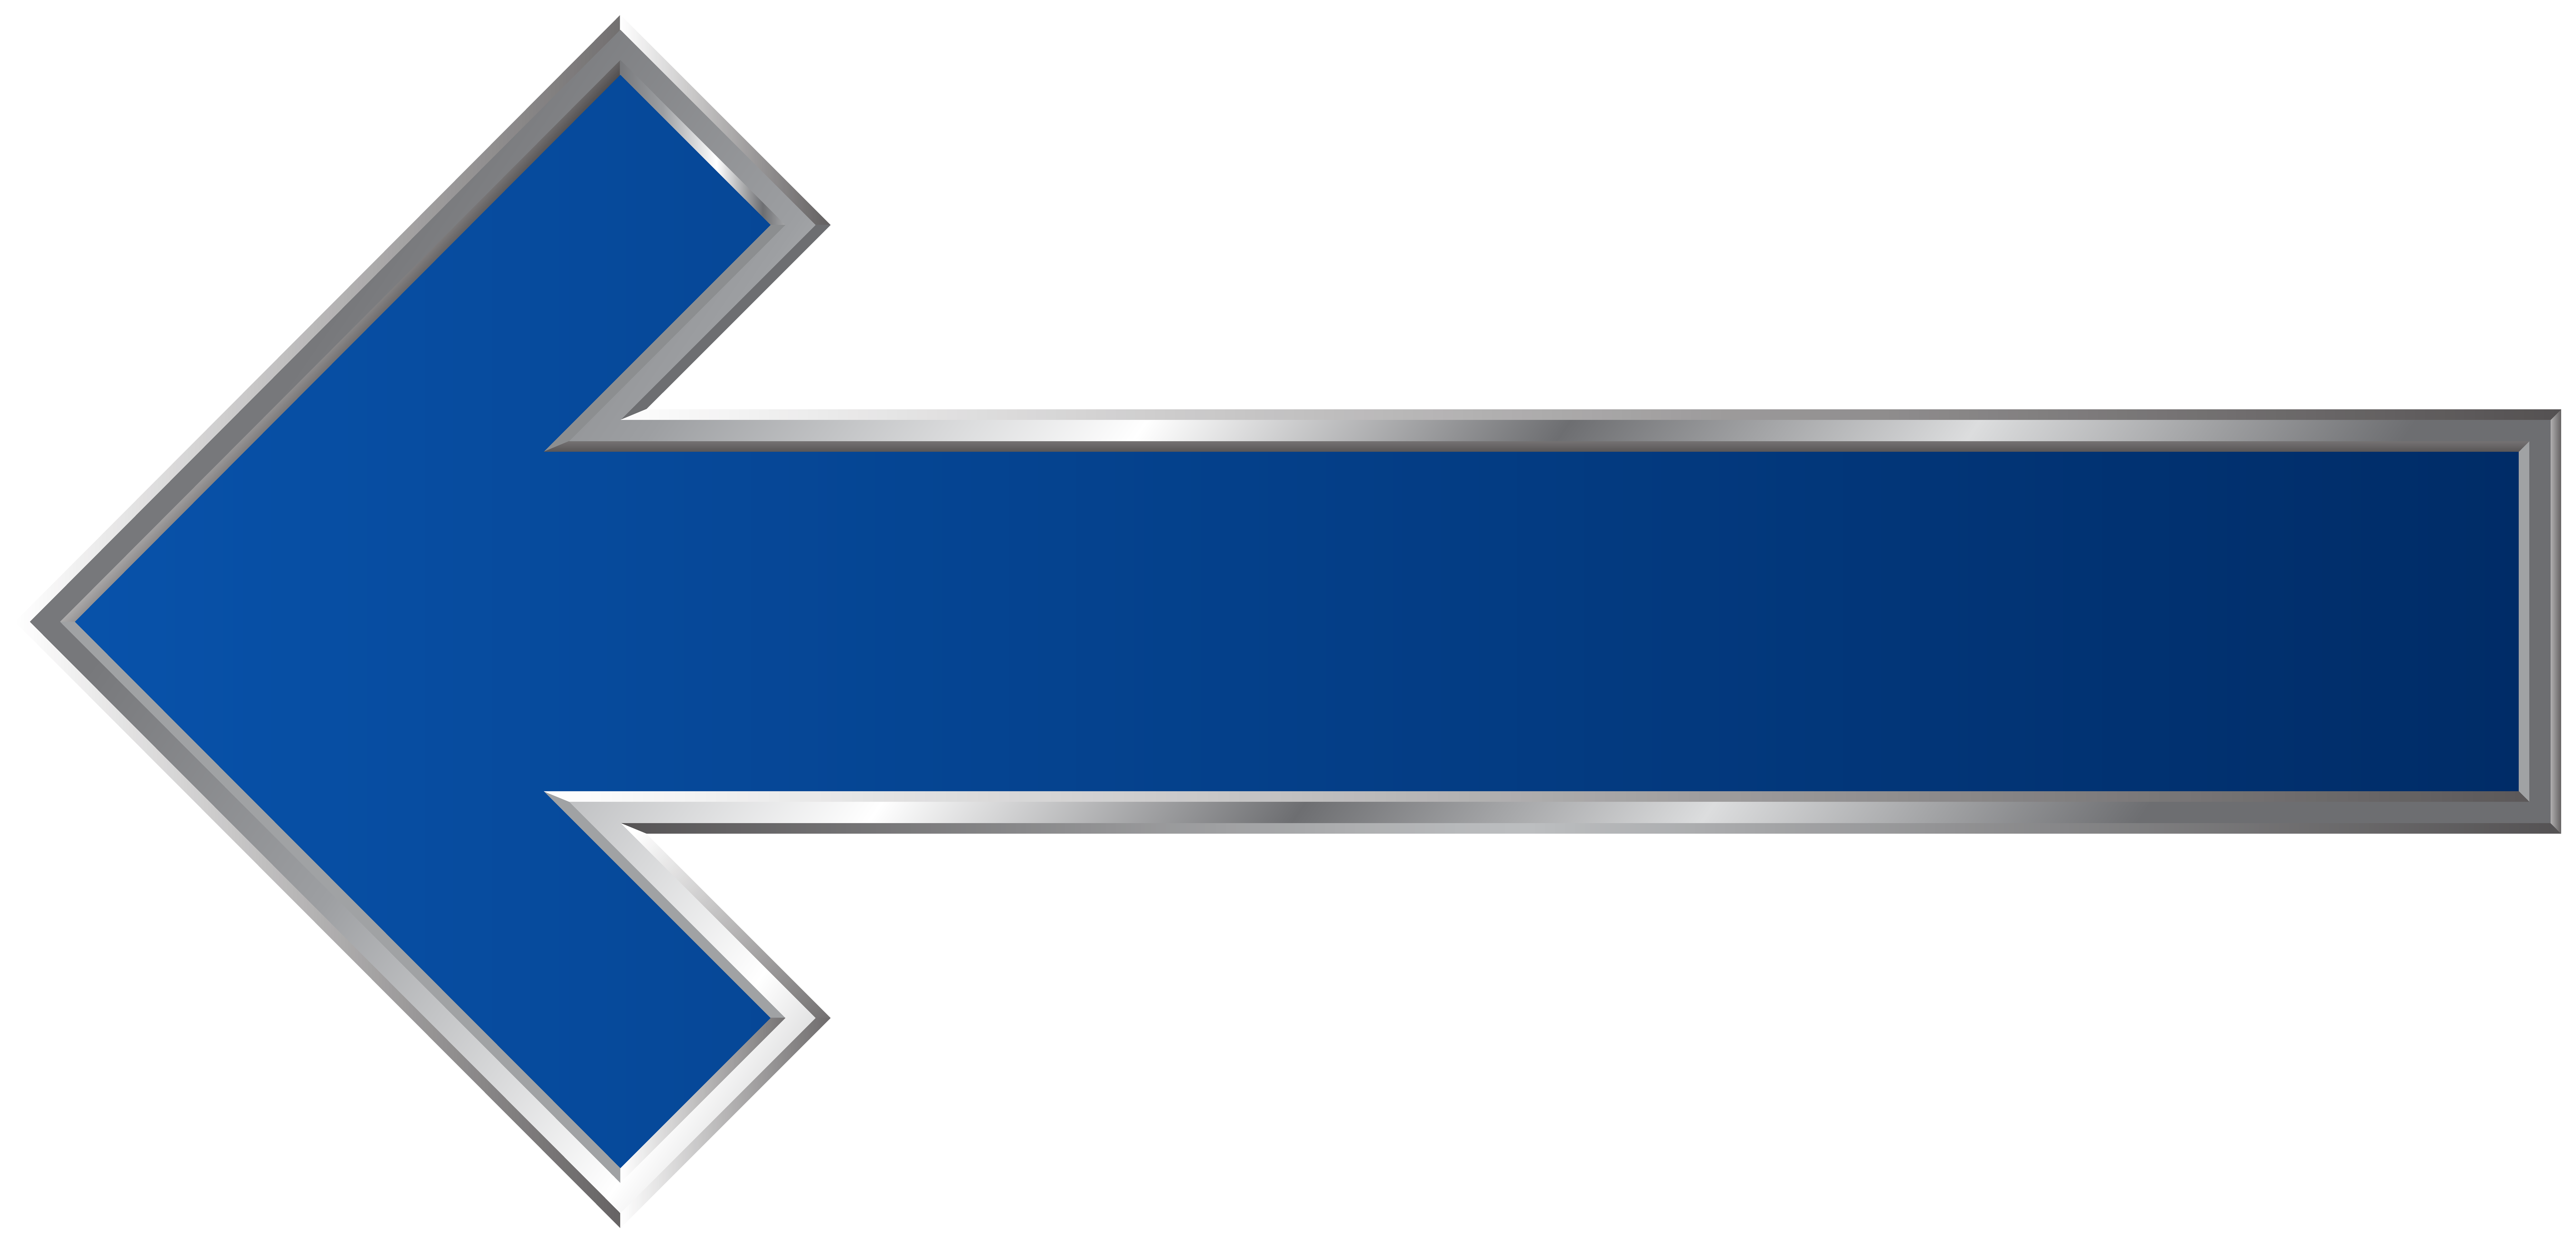 blue arrow transparent